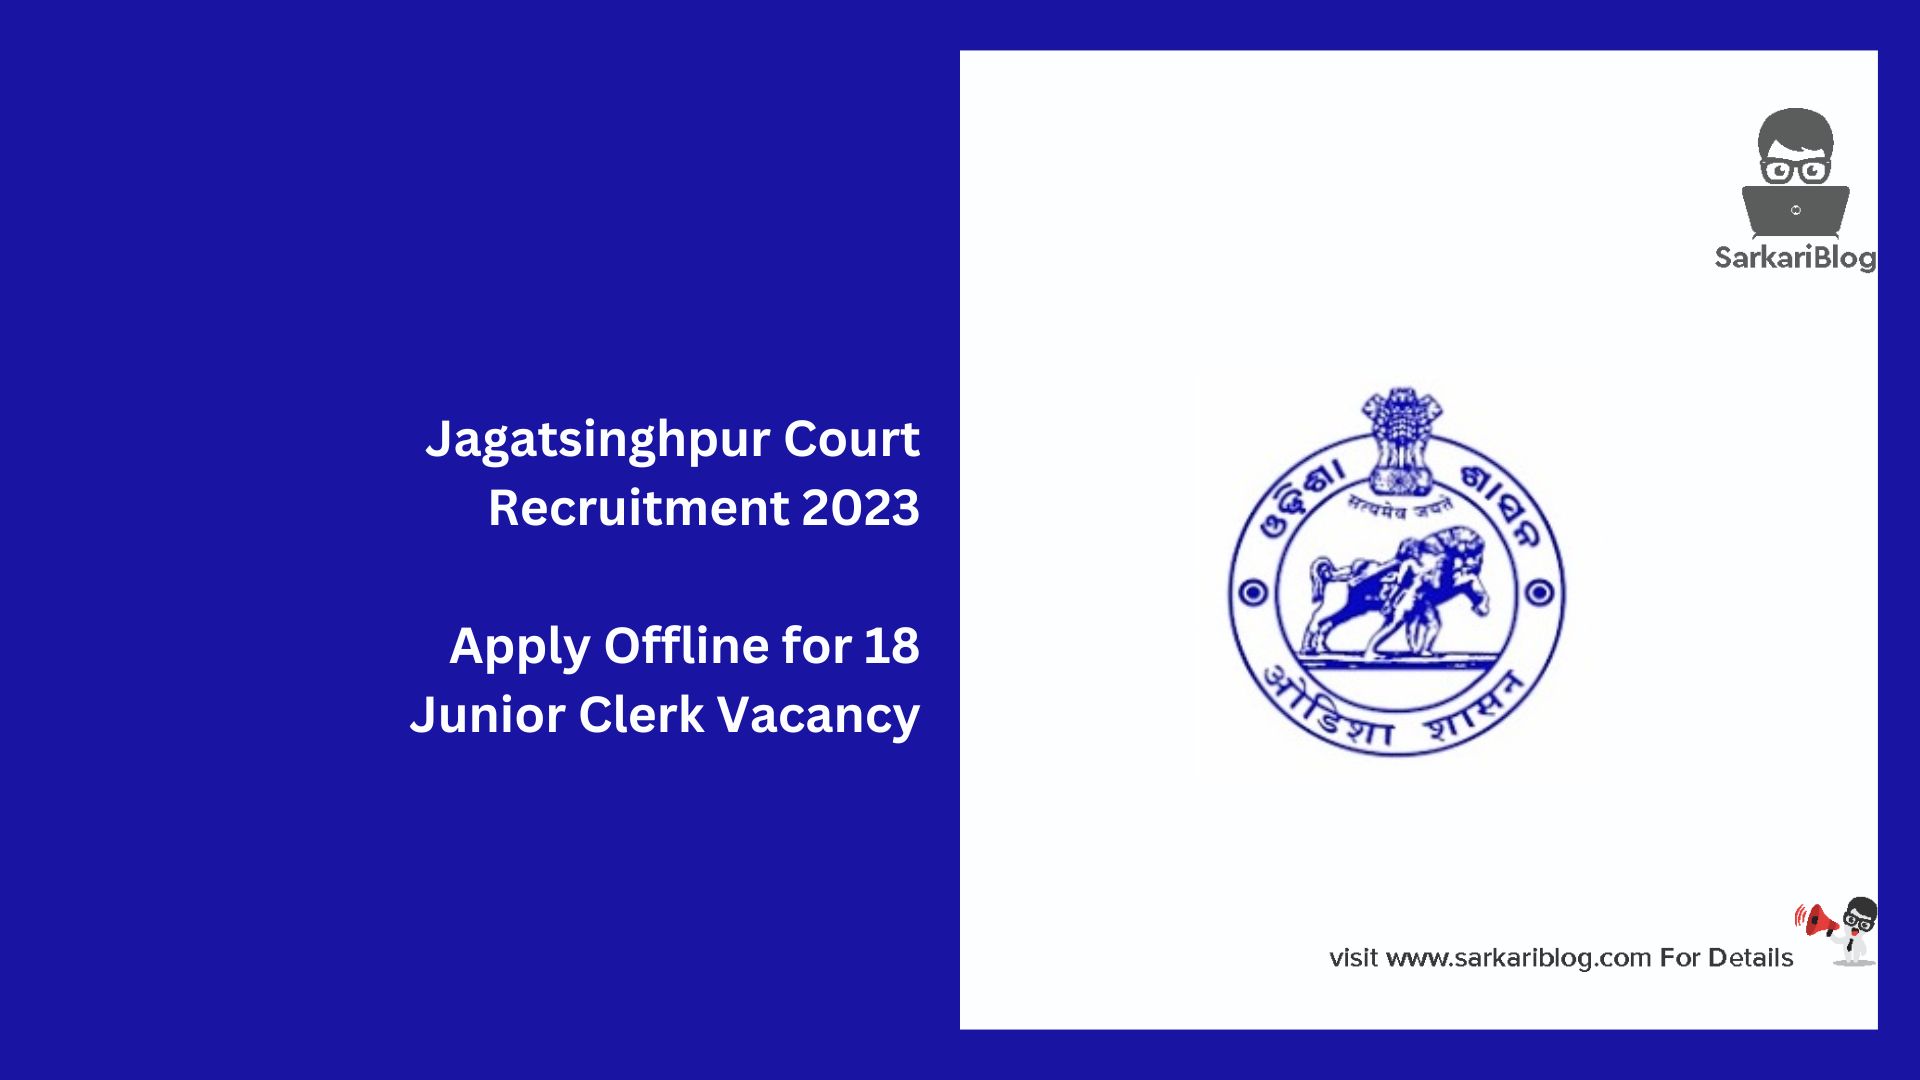 Jagatsinghpur Court Recruitment 2023